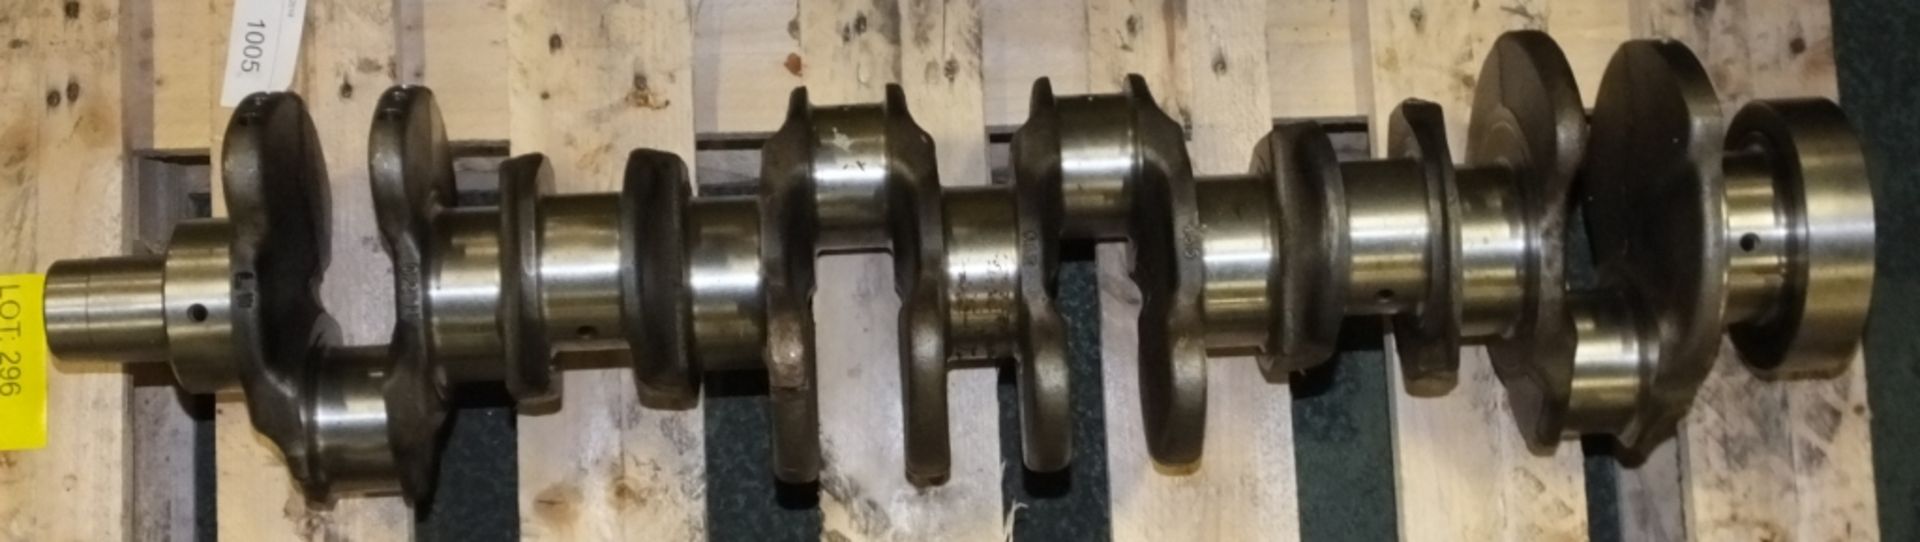 6 cylinder crankshaft for Perkins 6354 engine